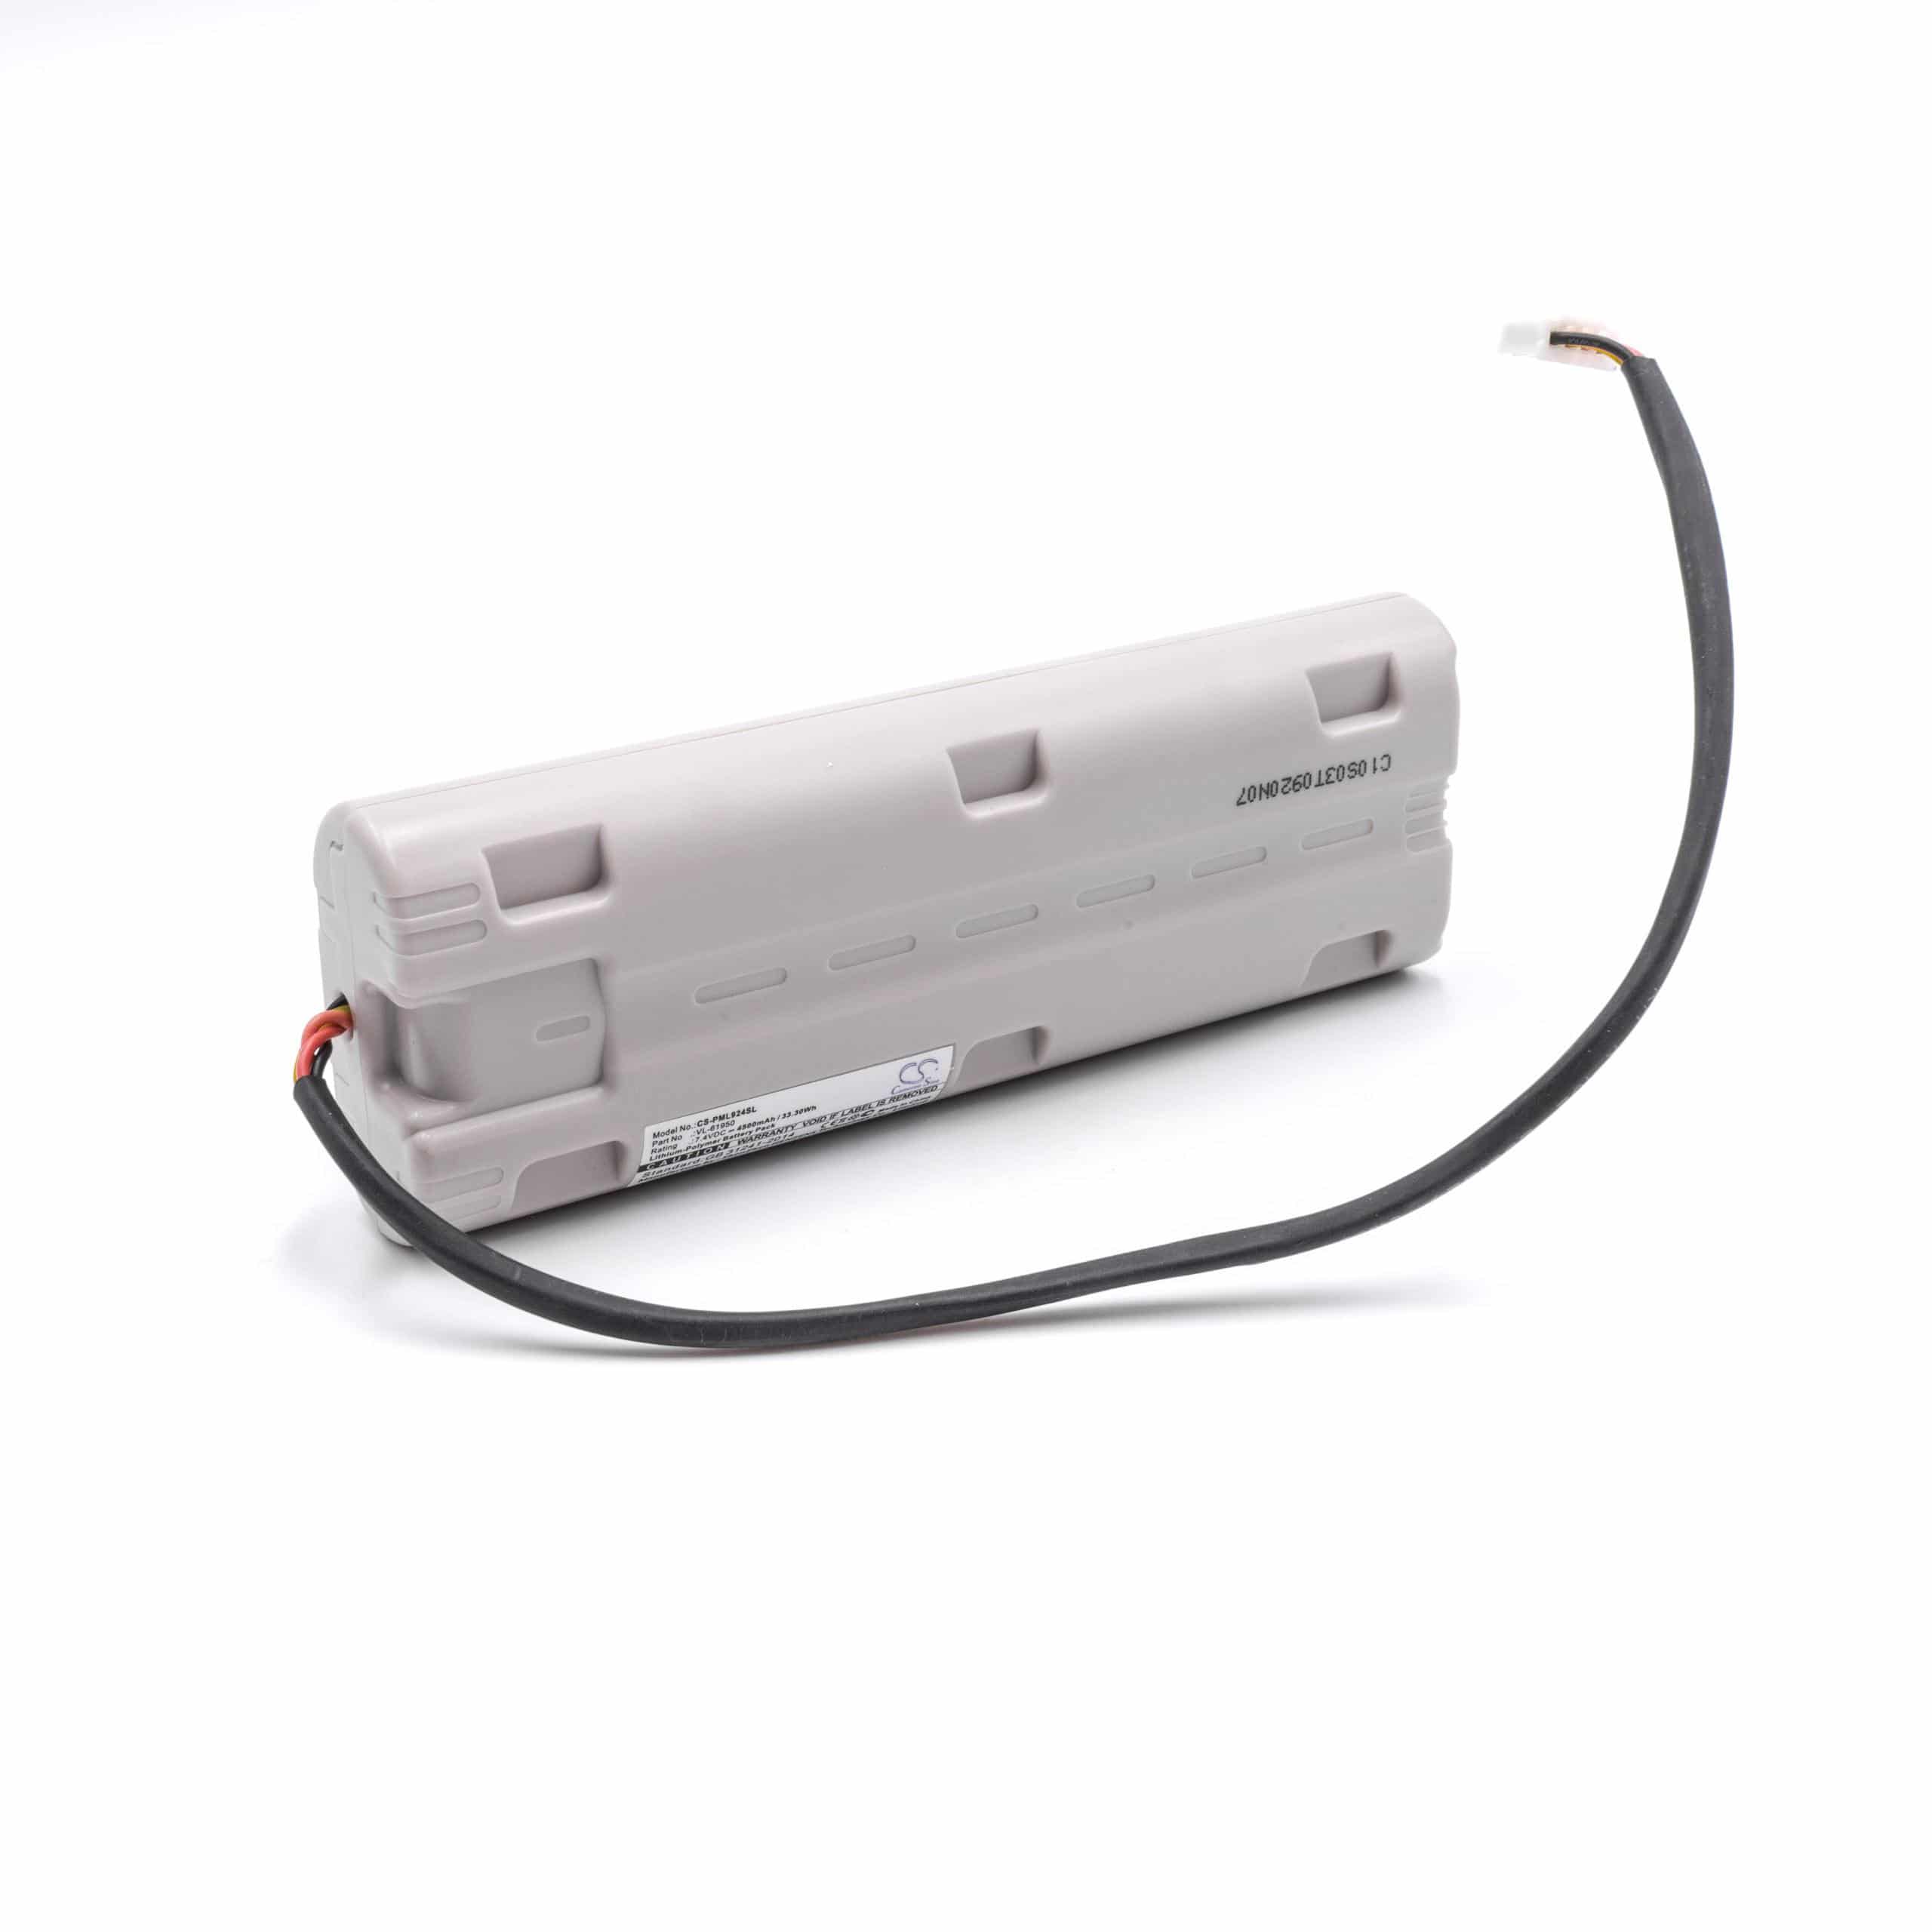 Batterie remplace Pure VL-61950 pour radio - 4500mAh 7,4V Li-polymère